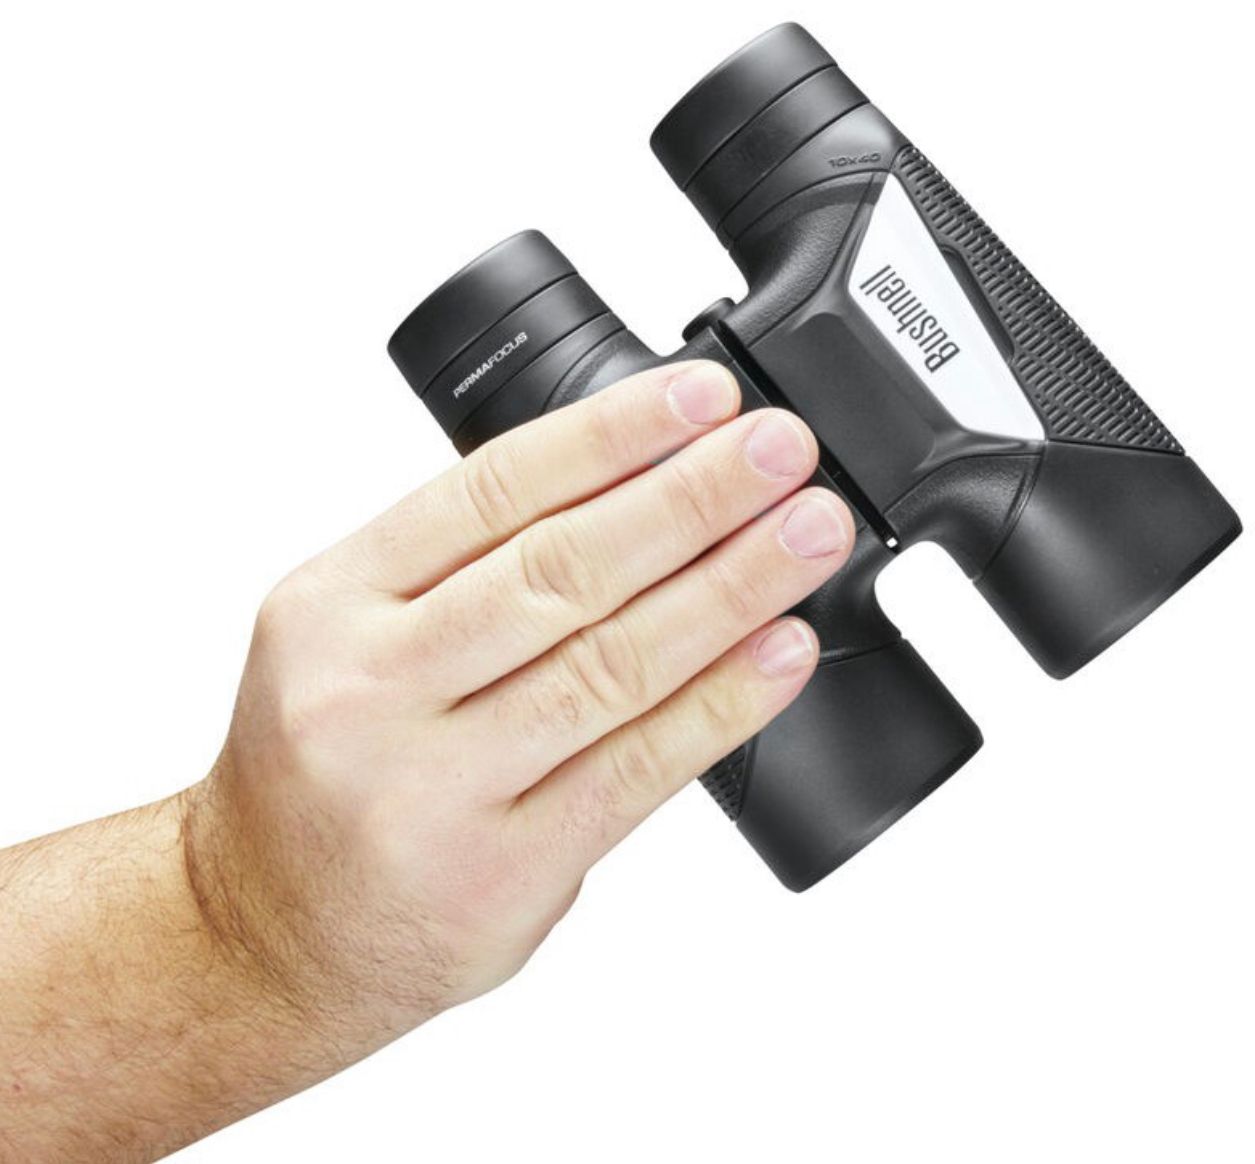 Bushnell Binoculars Spectator Sport 10x40 (BS11040) - Limited Lifetime Warranty